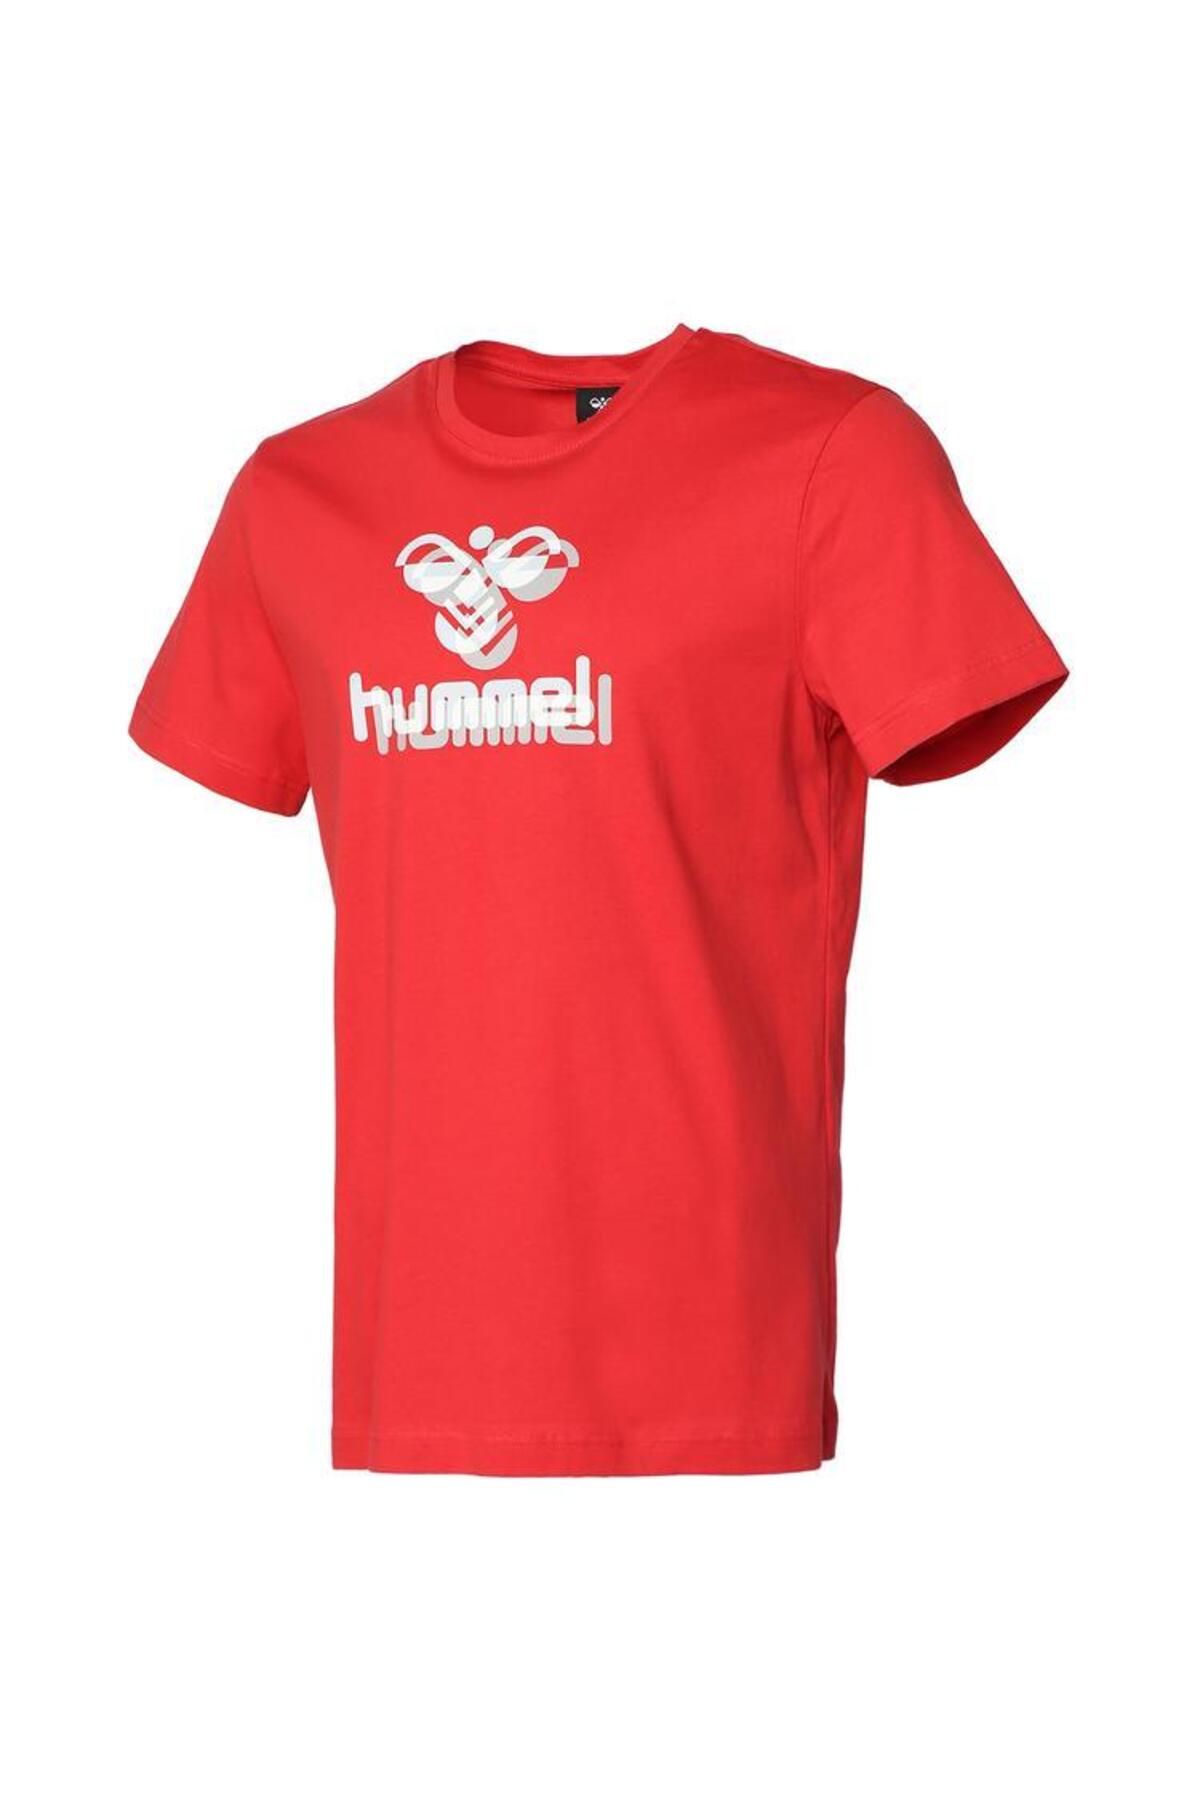 hummel 911702-2220 Senna Erkek T-shirt